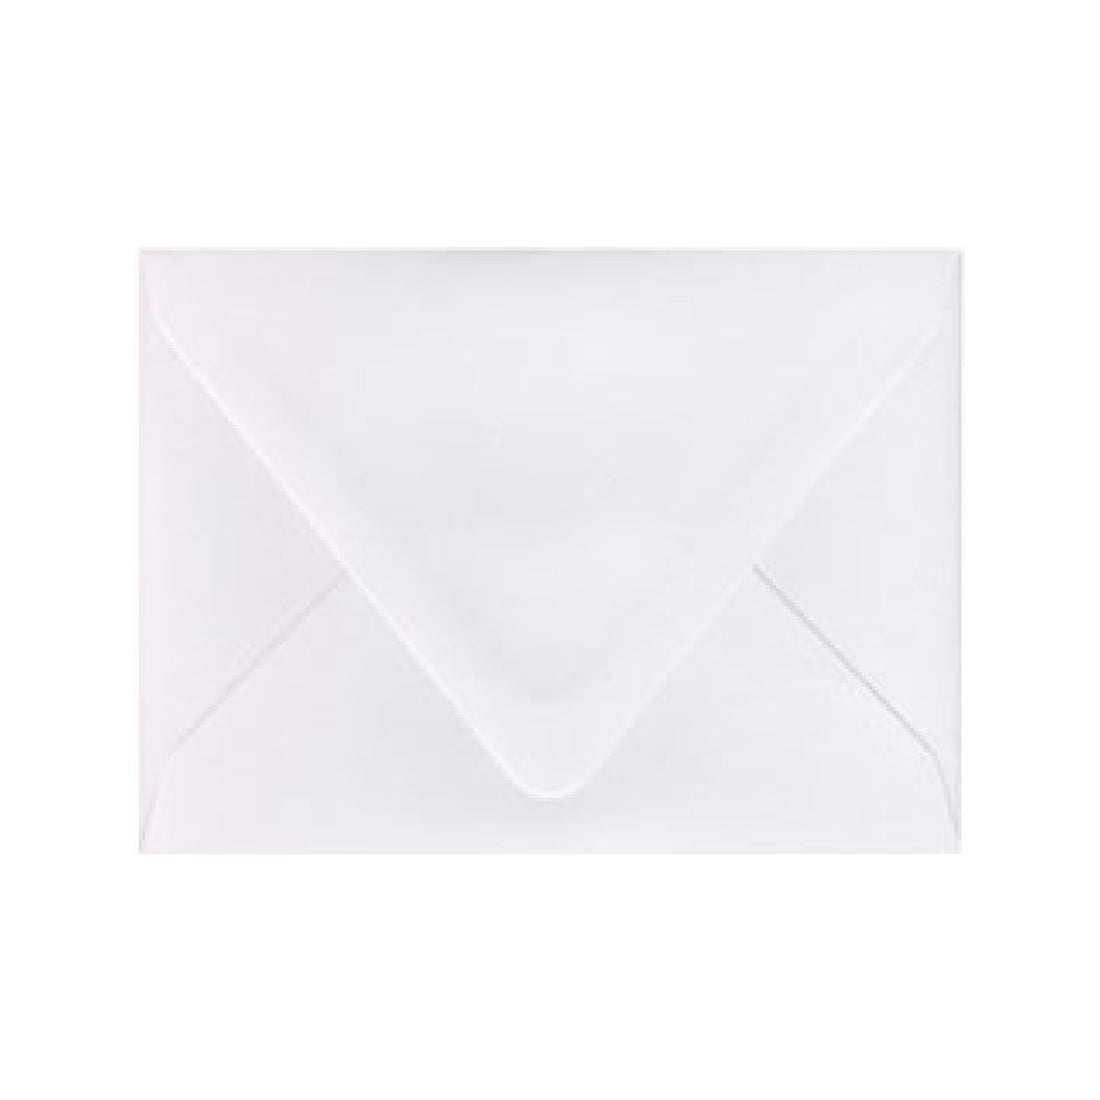 White Frost Envelopes - Pack of 25